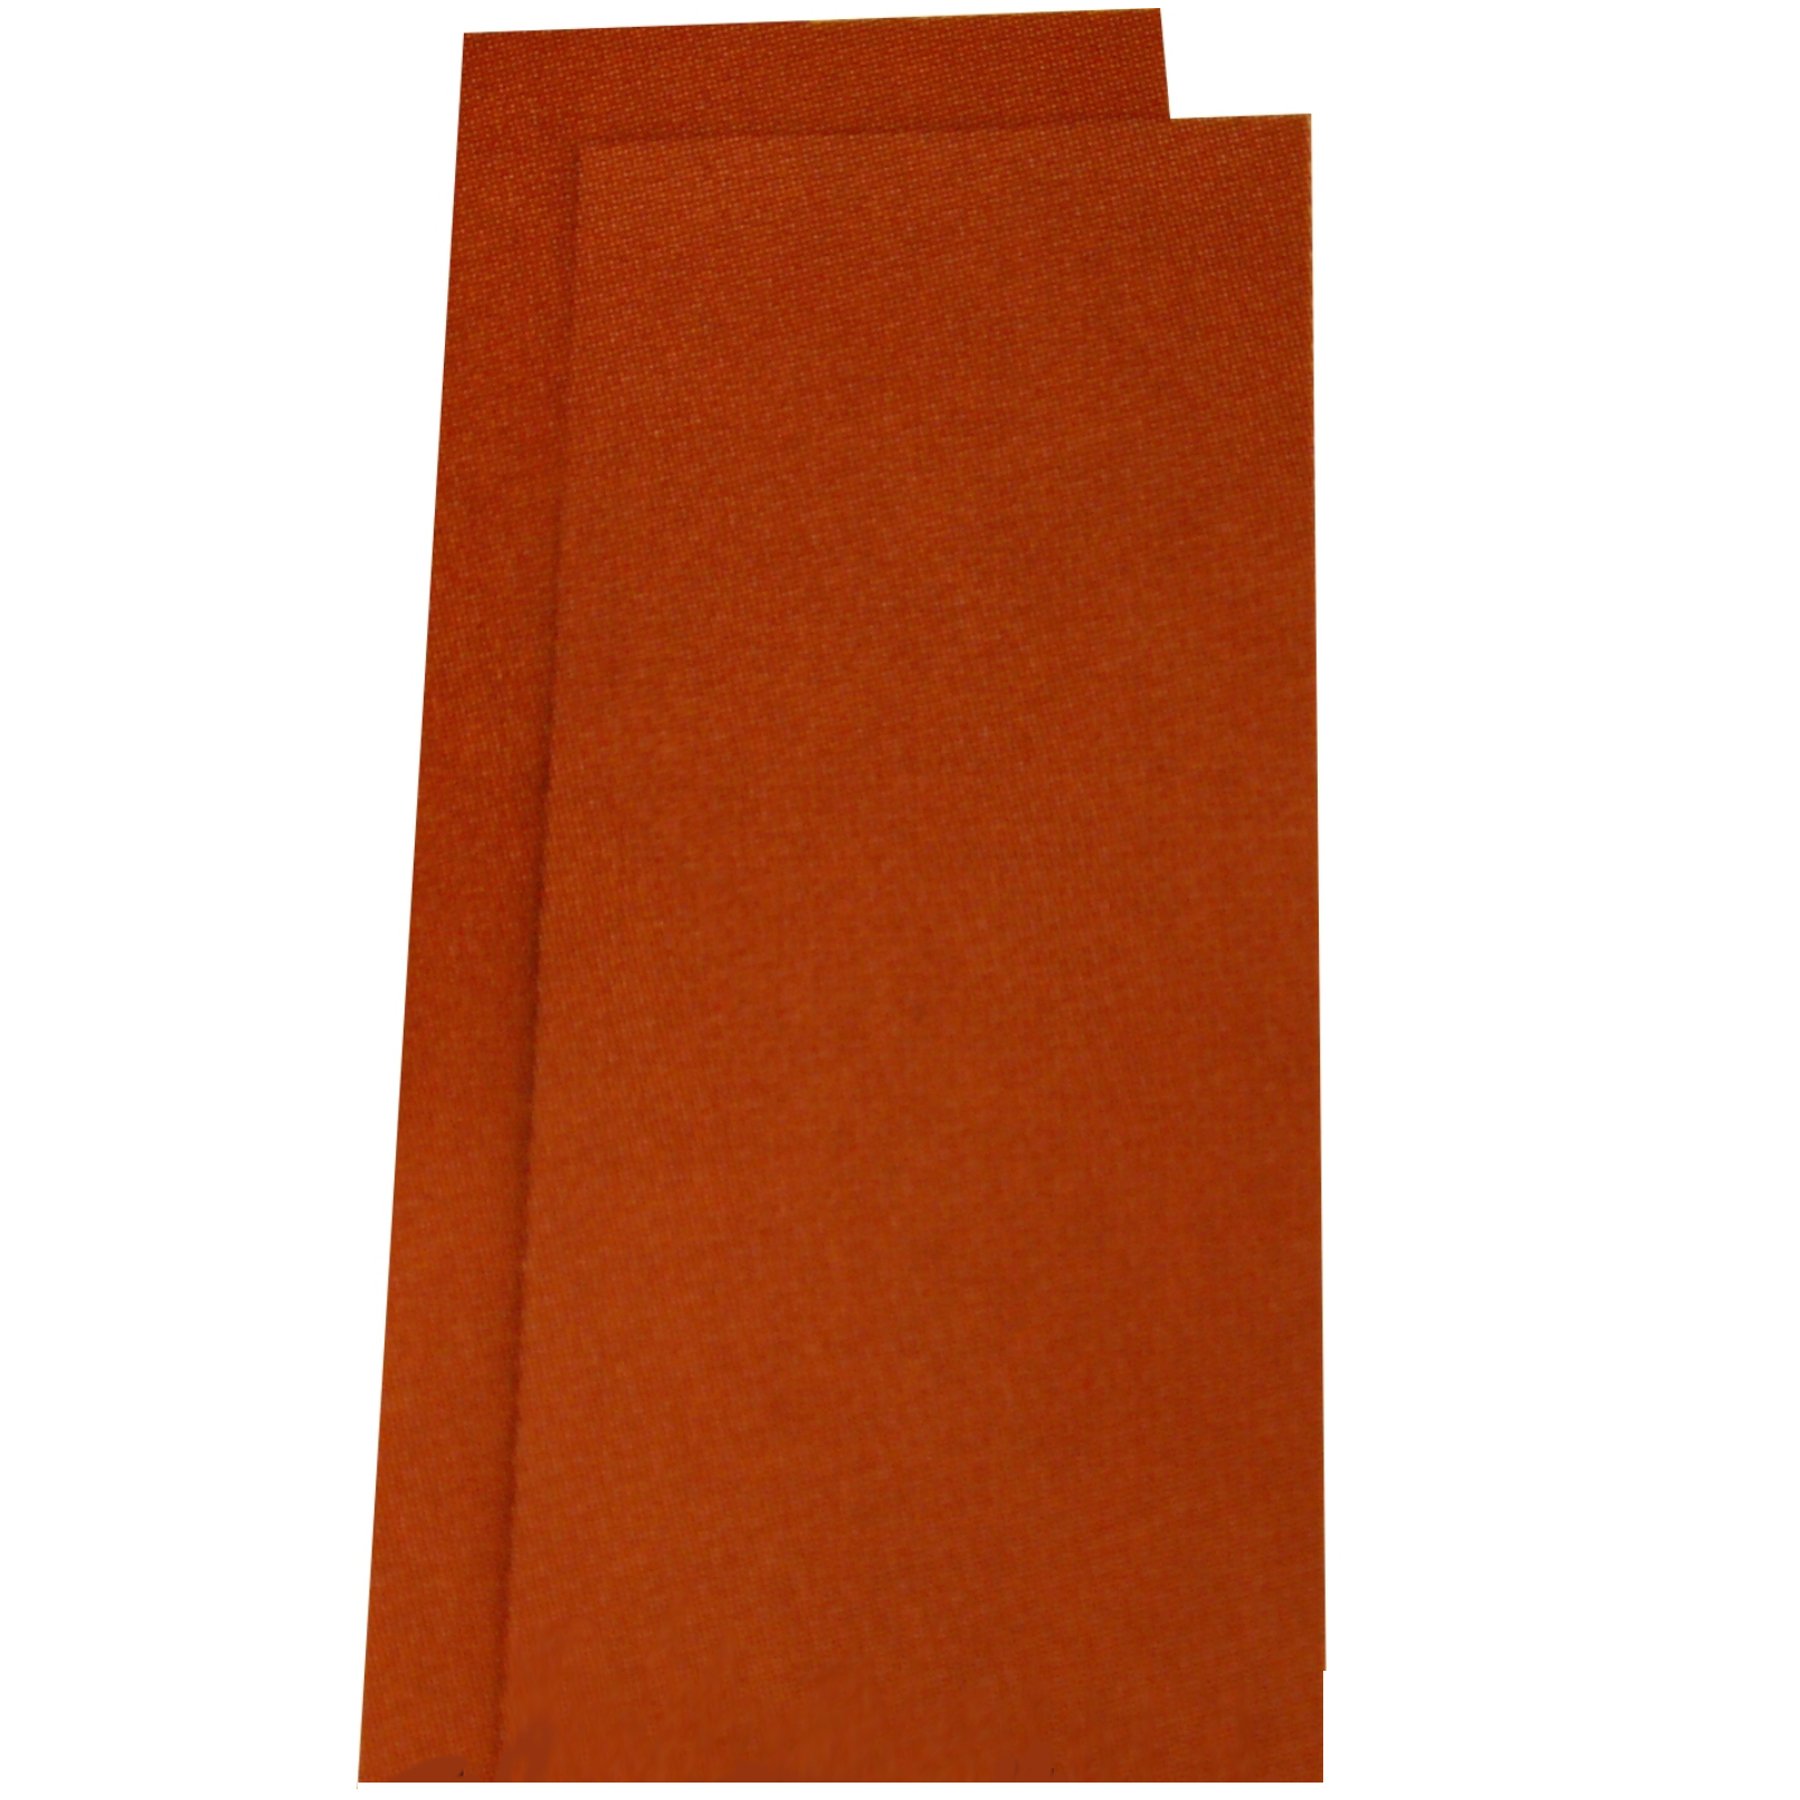 10 Blatt Trockenschleifpapier Körnung 80 Schleifpapier Rutscherpapier von Schleifpapier Trockenschleifpapier